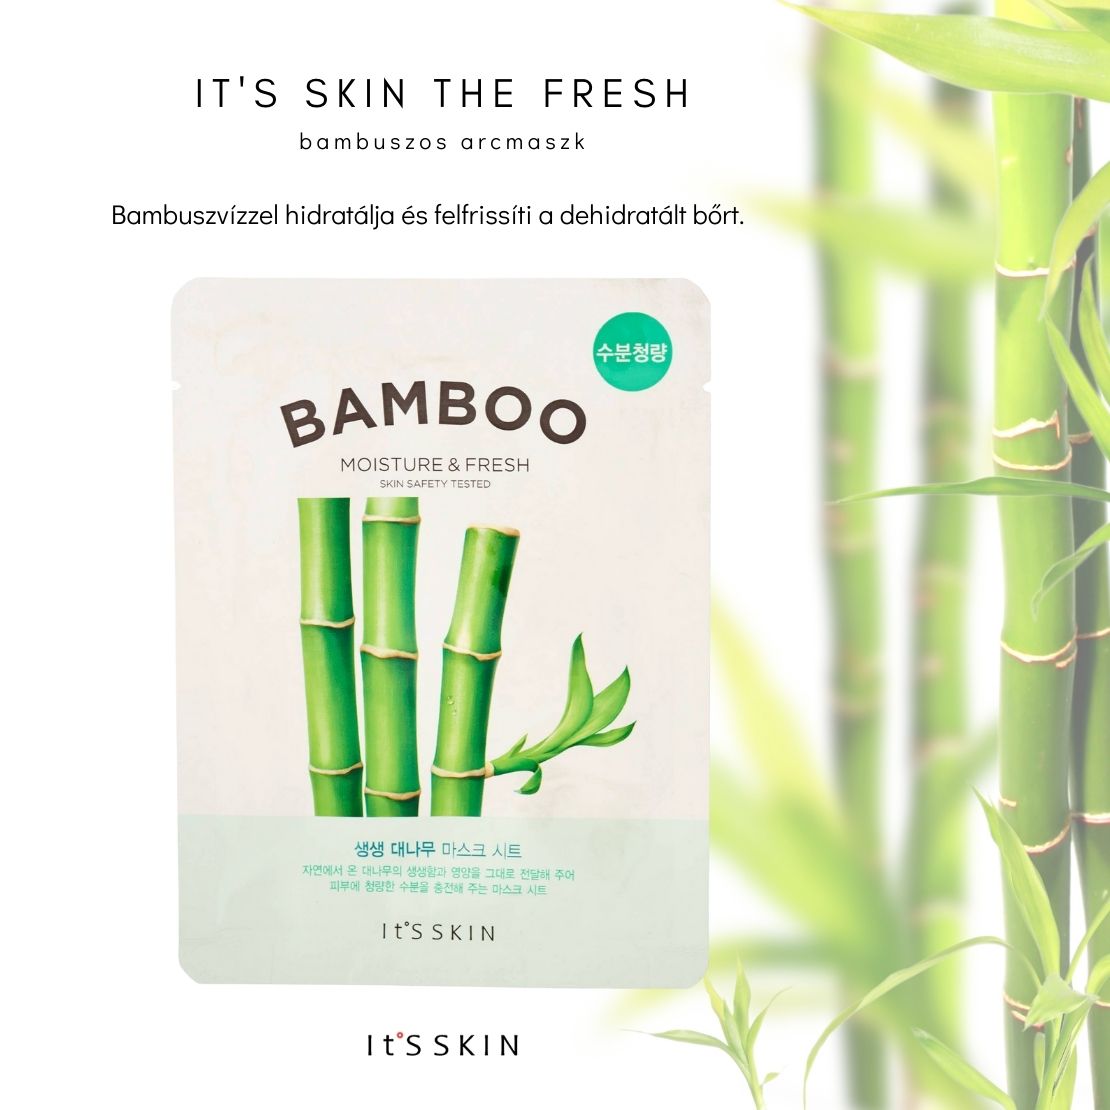 its-skin-the-fresh-bambuszos-arcmaszk-leiras